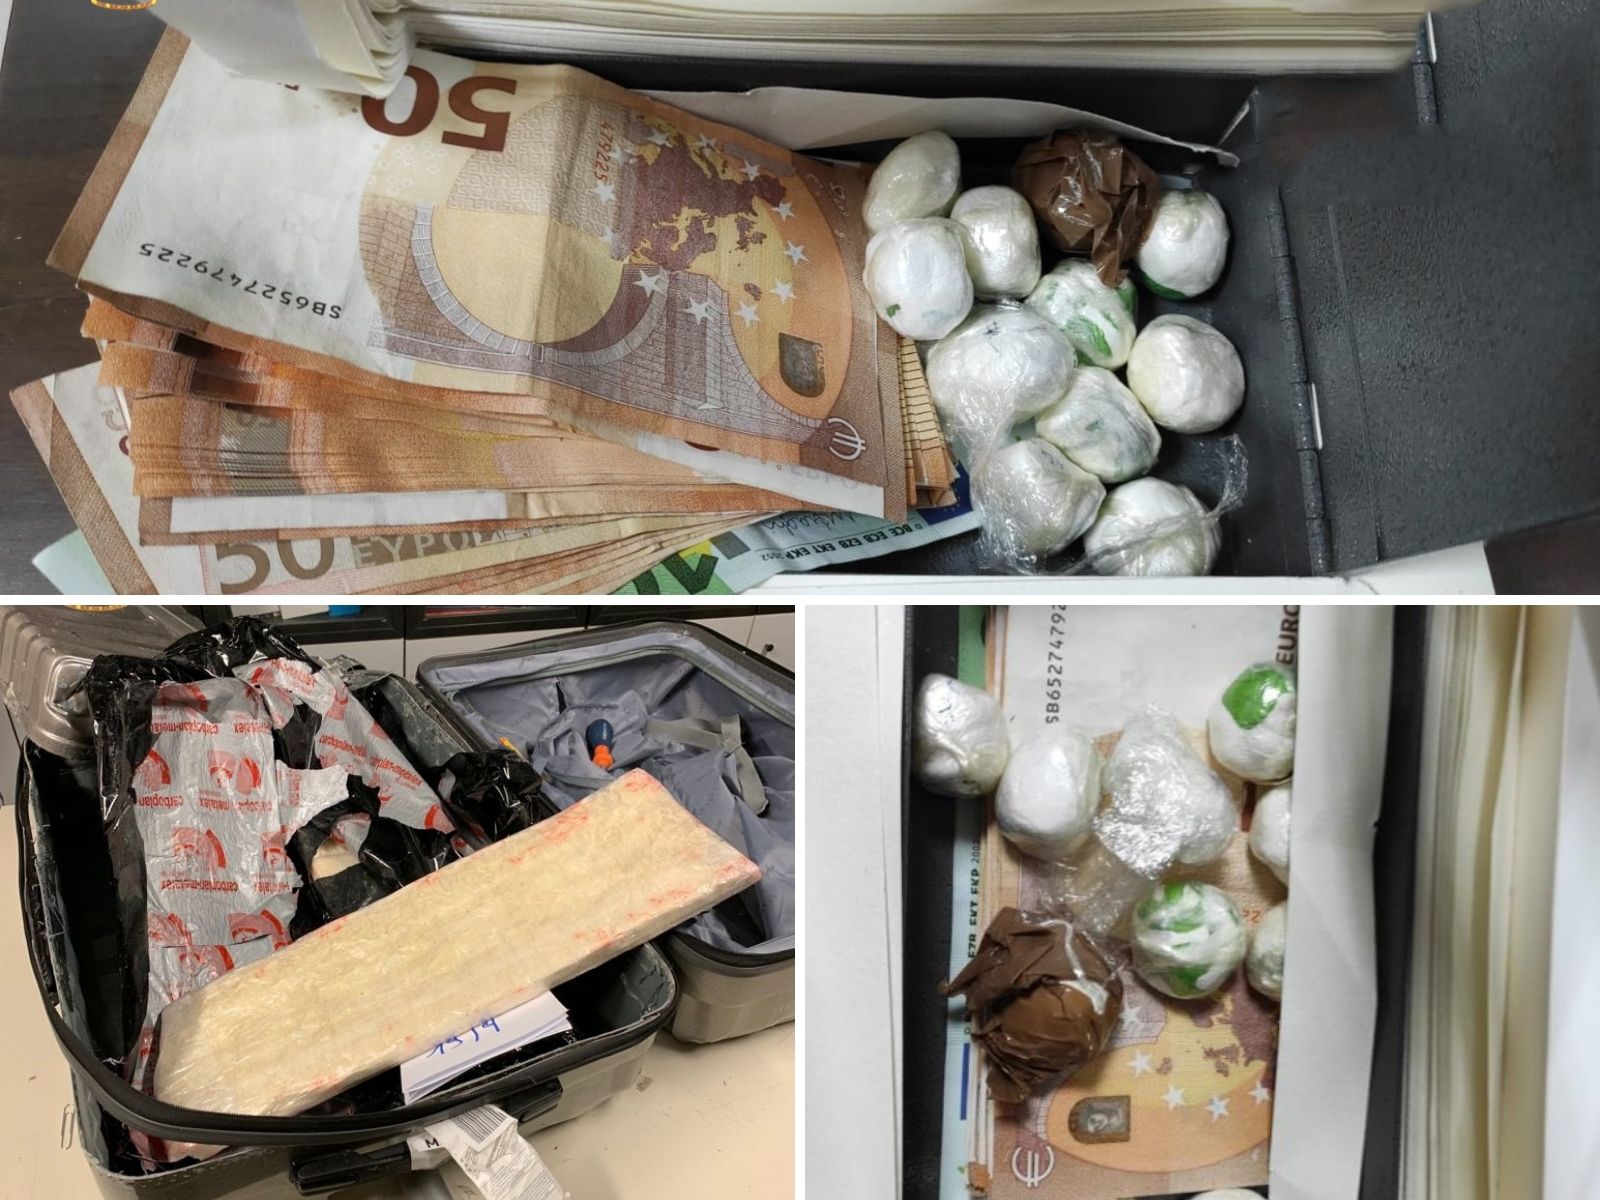 Operazione Vida loca: Gdf sequestra 19 kg di cocaina “messicana” del valore di 3,2 milioni di euro